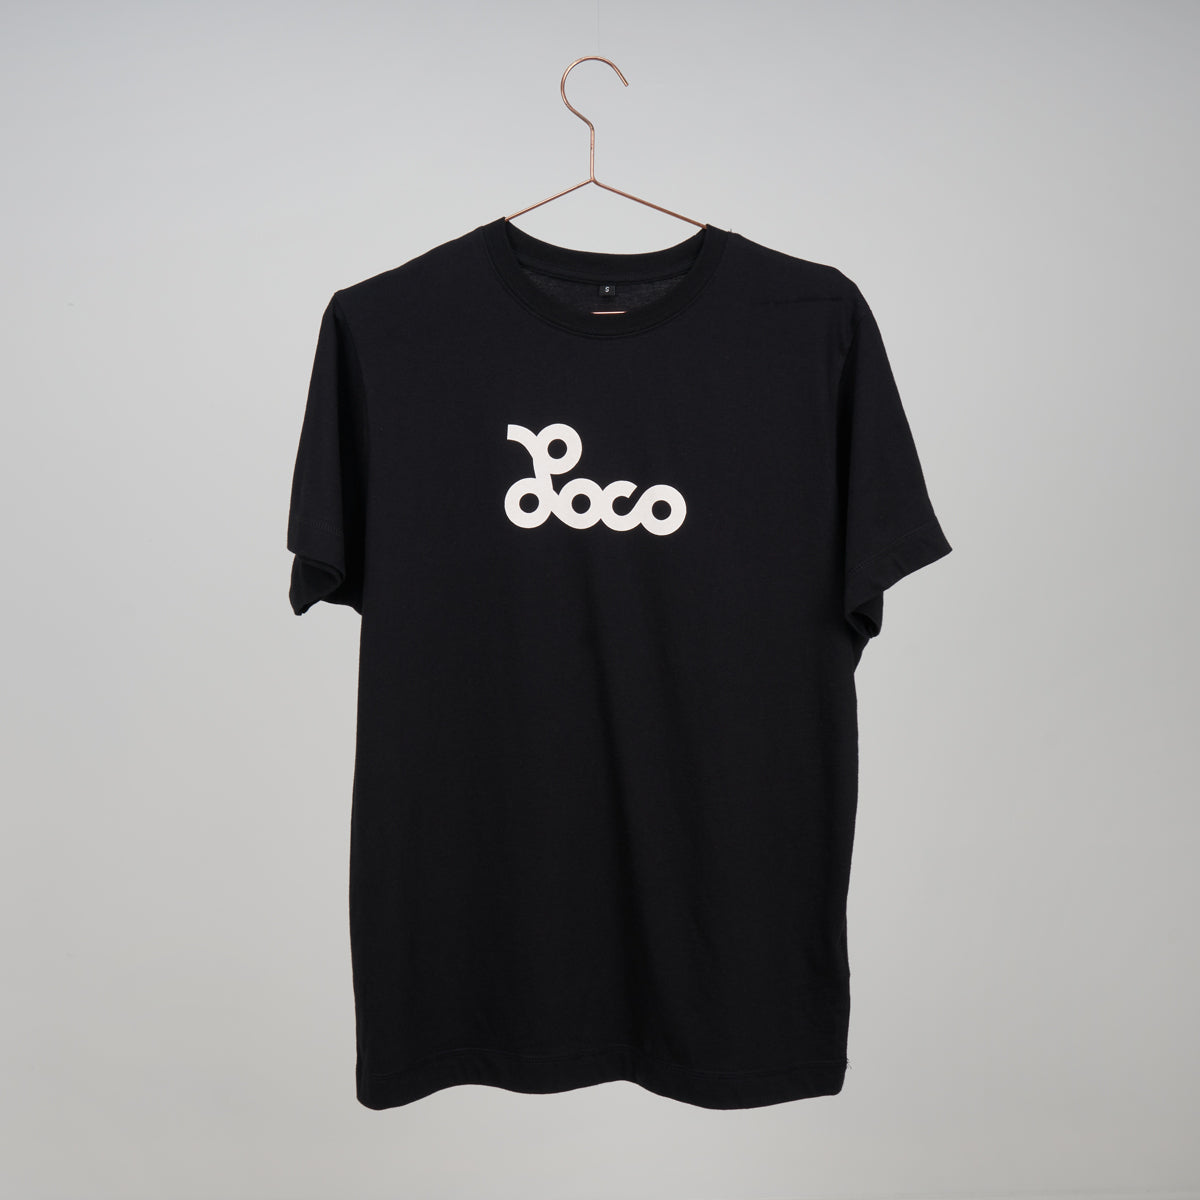 Loco T-Shirt - Black